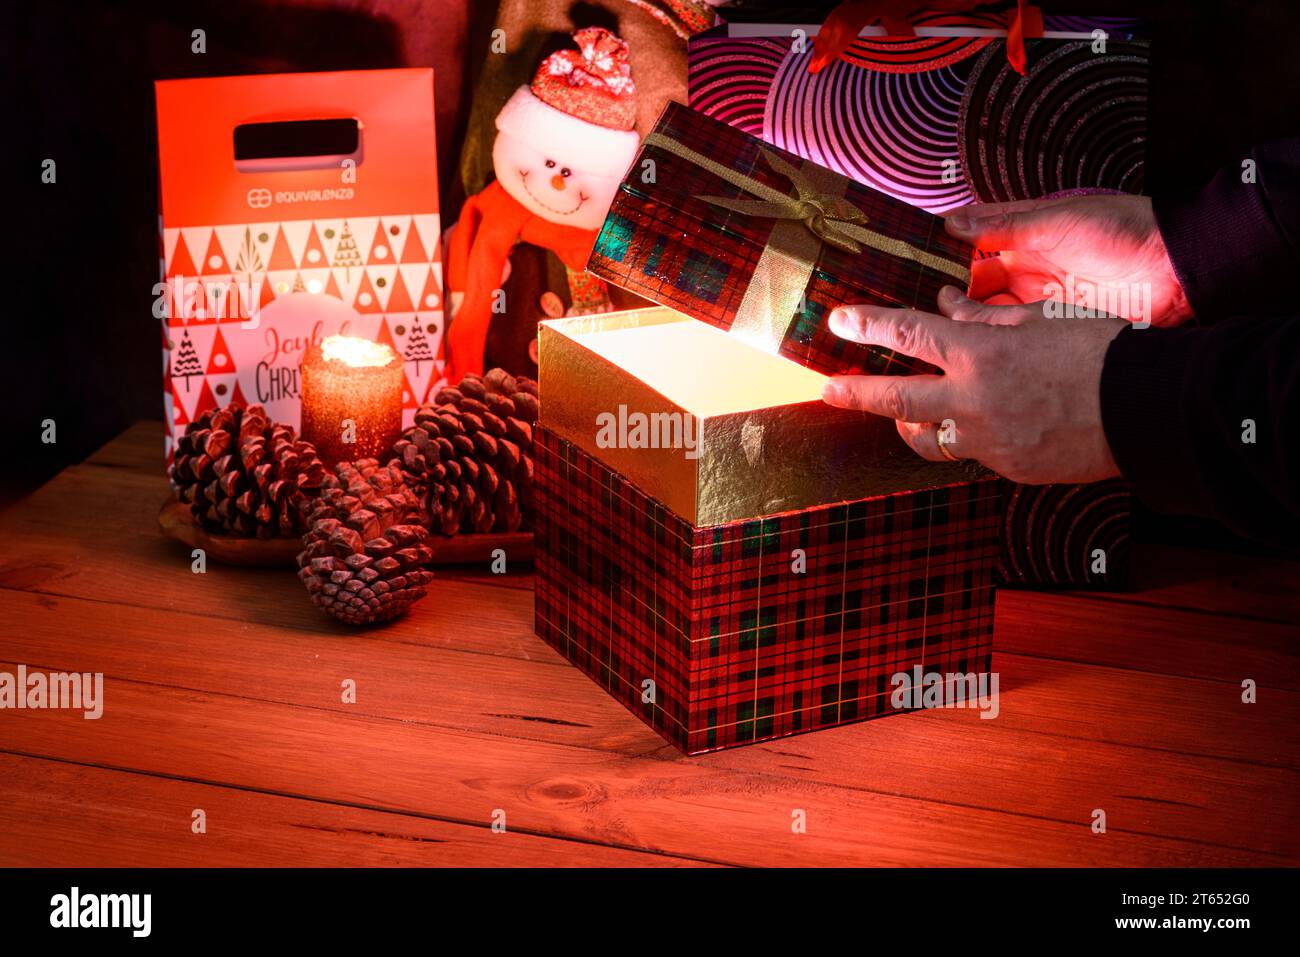 Details zu den Händen, die eine Weihnachtsgeschenkbox öffnen, von der aus ein helles Licht leuchtet. Weihnachtsstillleben mit dunklem Hintergrund, beleuchtet durch Dose Stockfoto